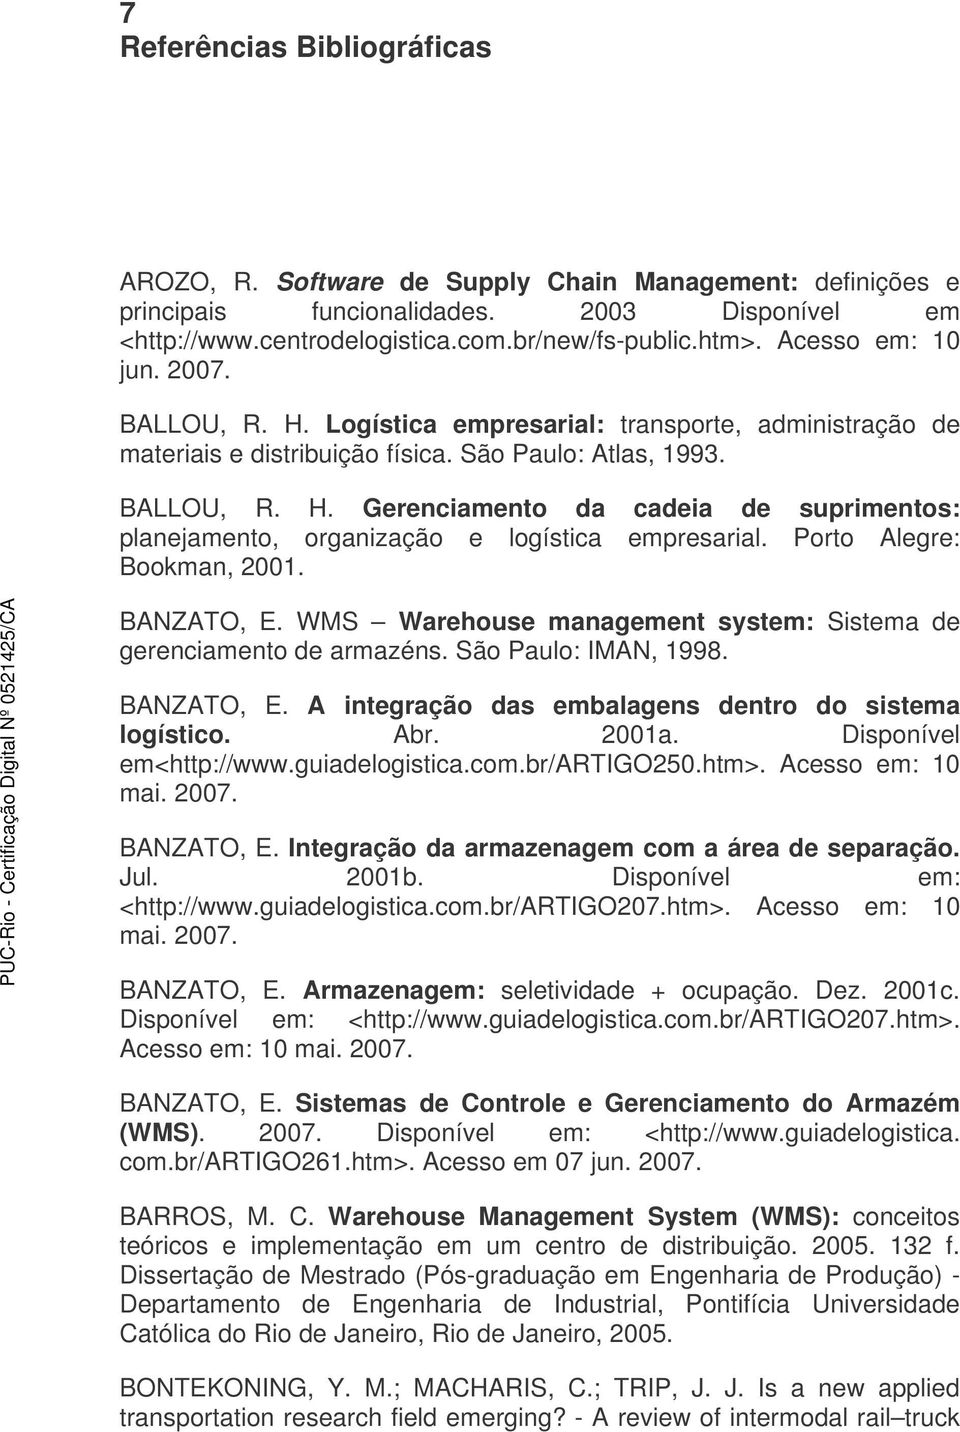 Porto Alegre: Bookman, 2001. BANZATO, E. WMS Warehouse management system: Sistema de gerenciamento de armazéns. São Paulo: IMAN, 1998. BANZATO, E. A integração das embalagens dentro do sistema logístico.